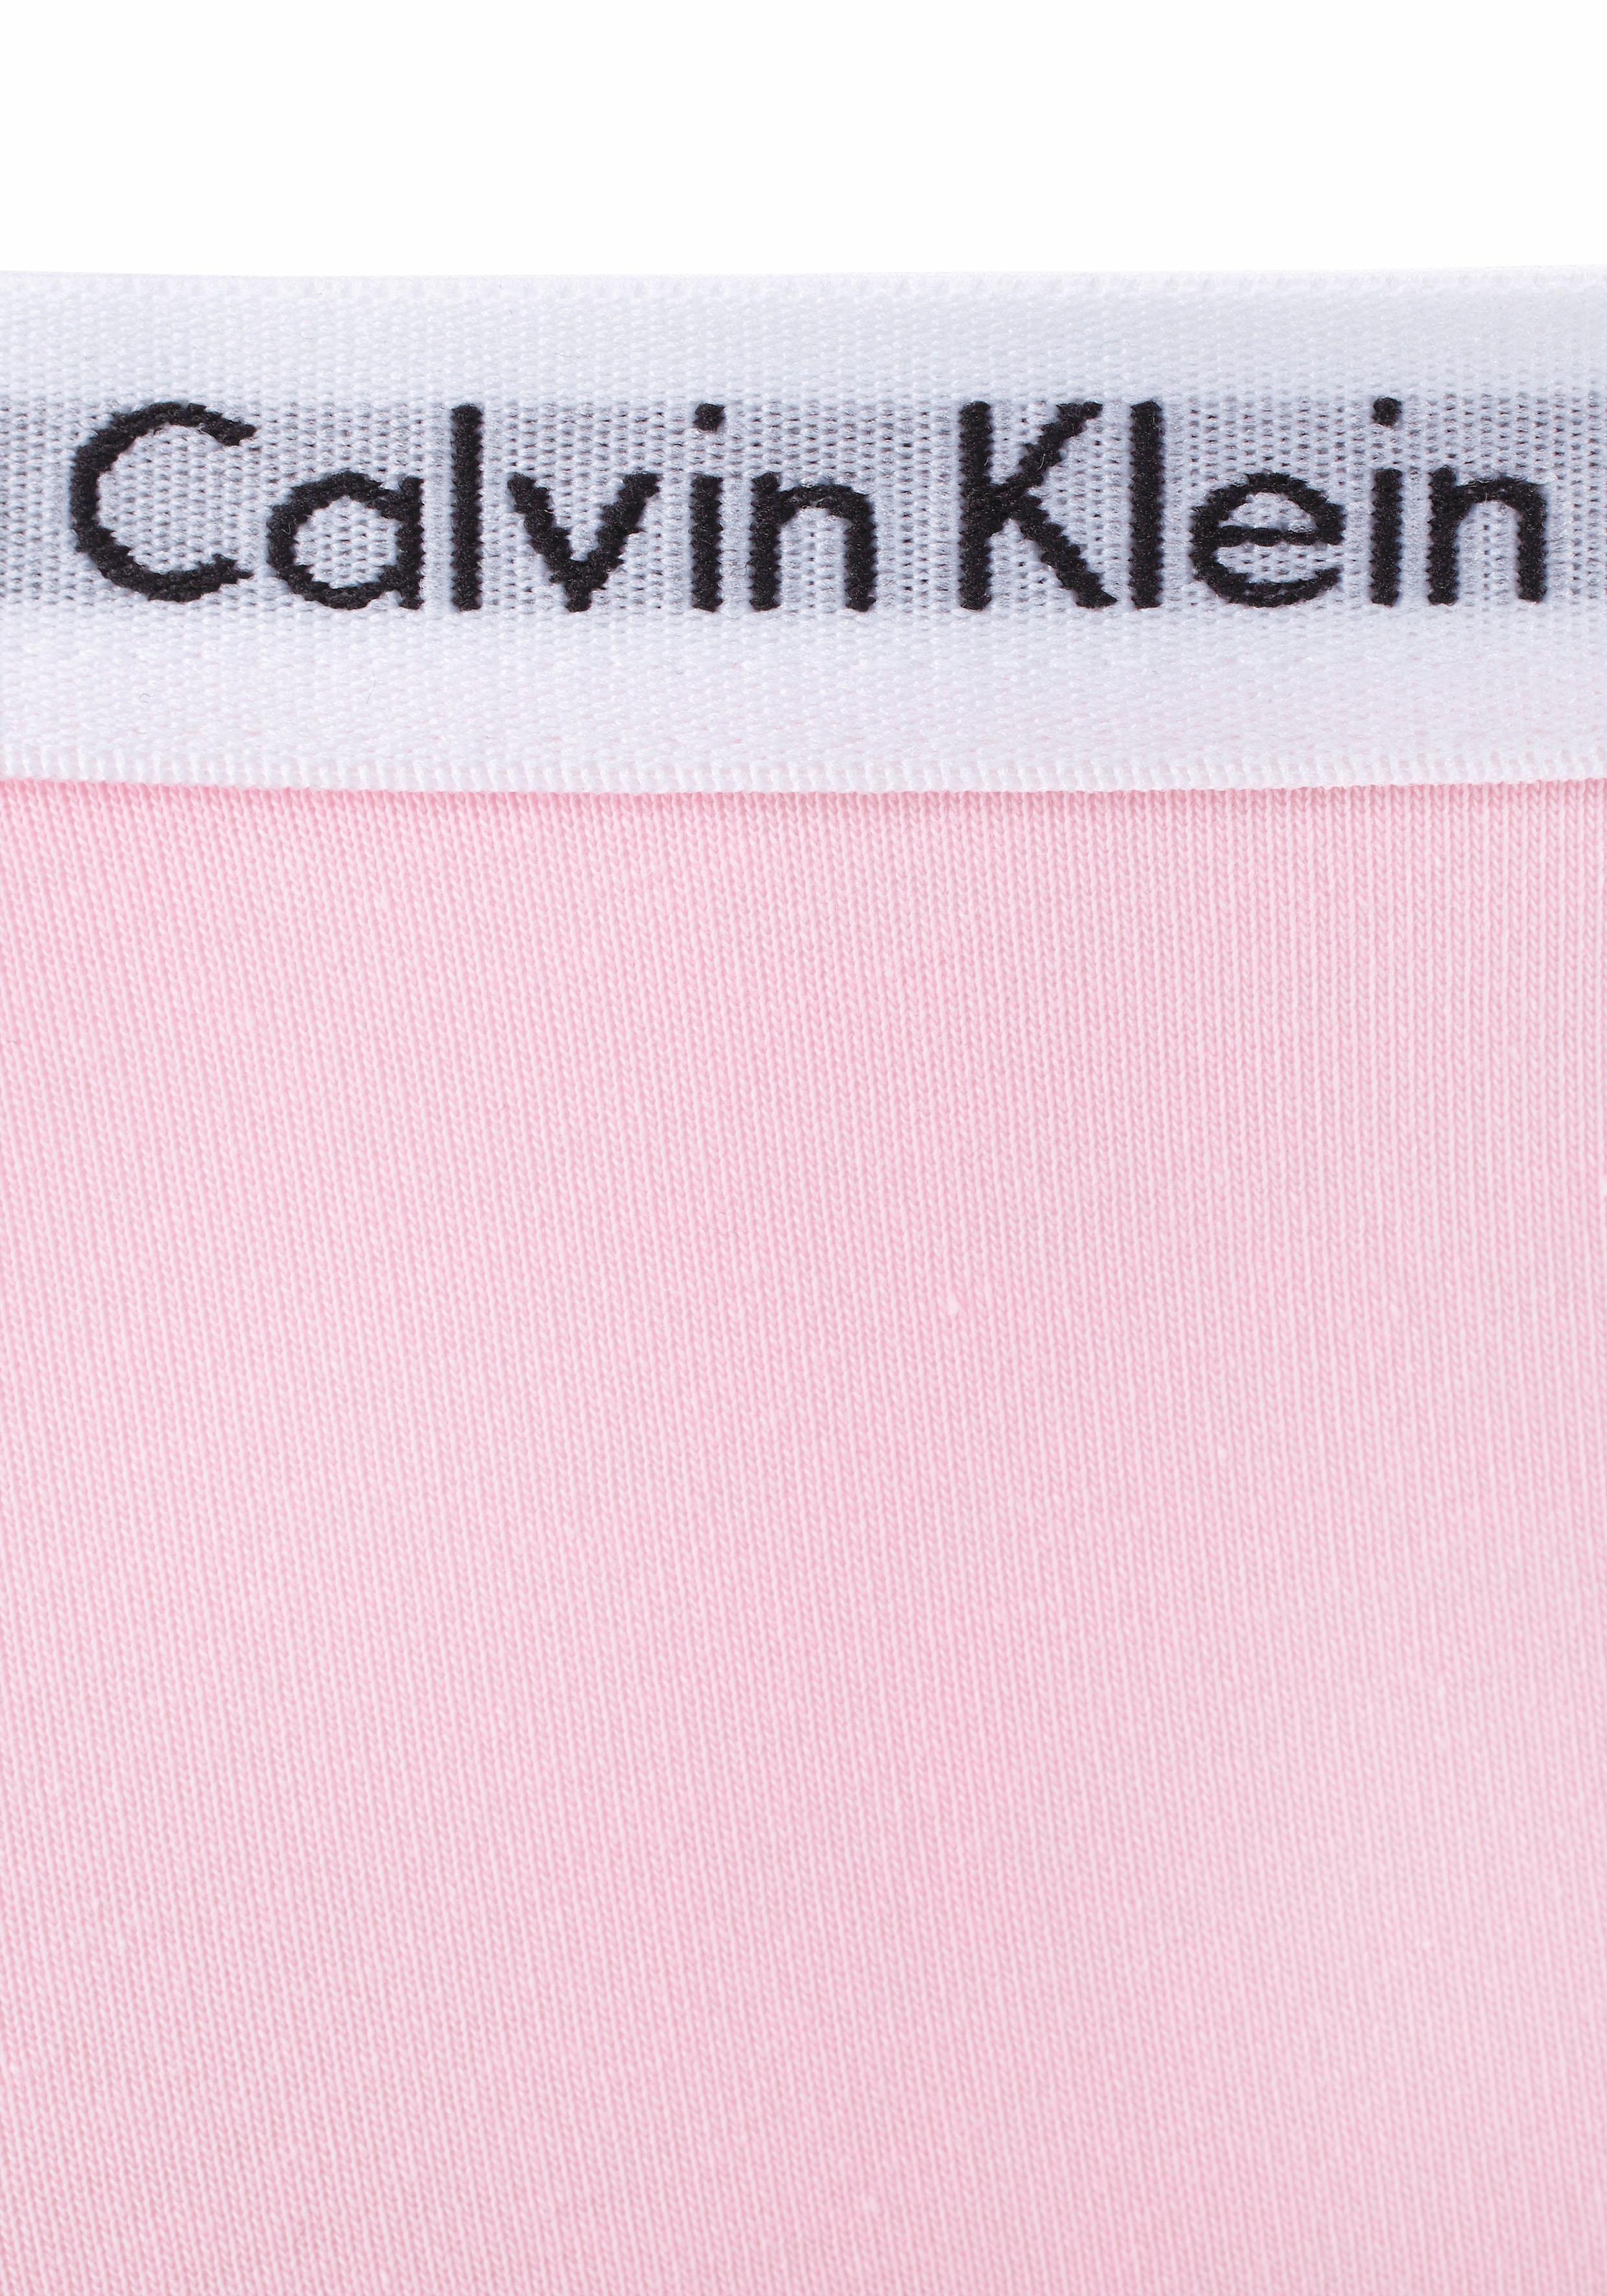 Calvin Klein Underwear Panty, (2 St.), Kinder Kids Junior MiniMe,für Mädchen mit Logobund